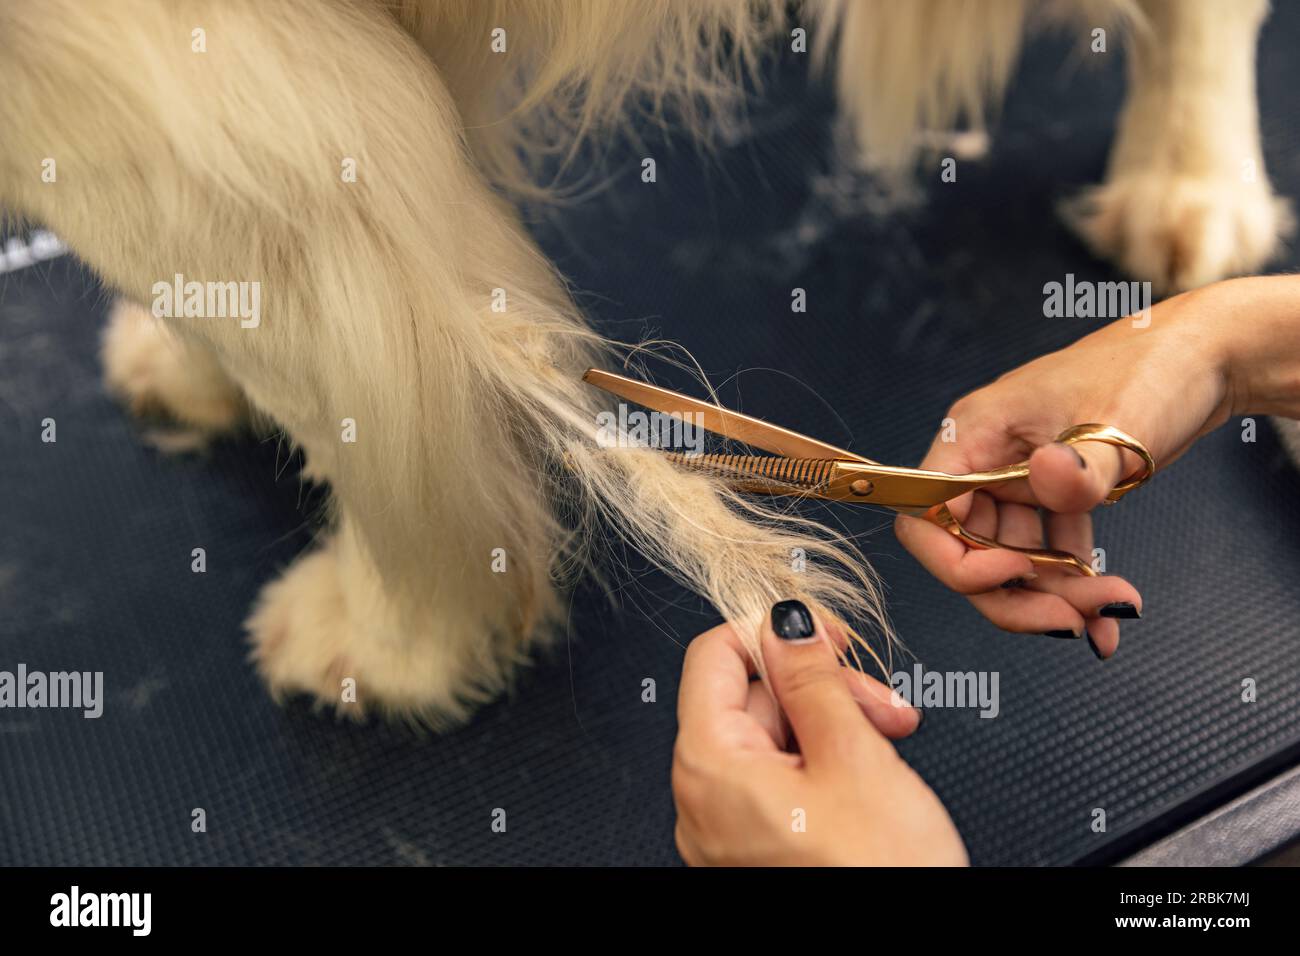 Pelliccia professionale tagliata con forbici. Il concetto di "cane da toeletta" Foto Stock